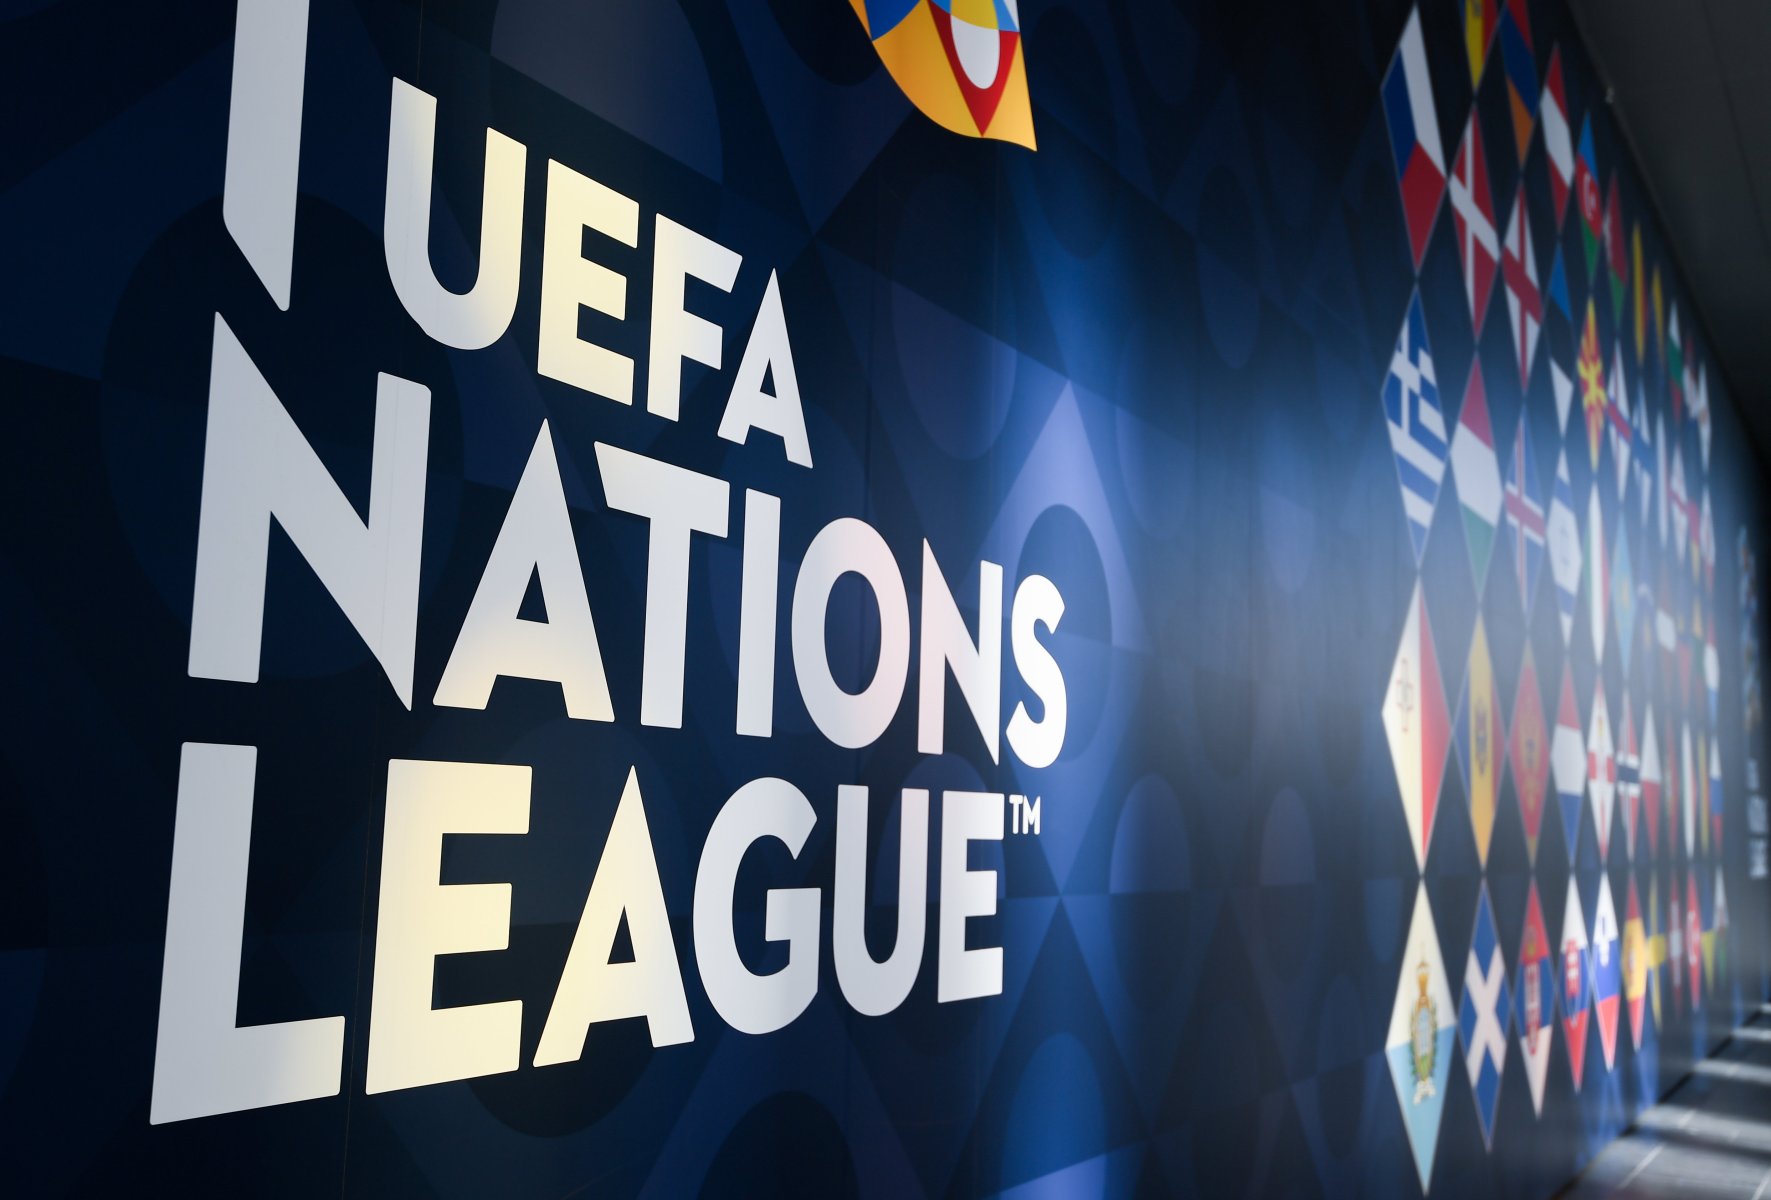 UEFA Nations League 2022/23: Finalturnier